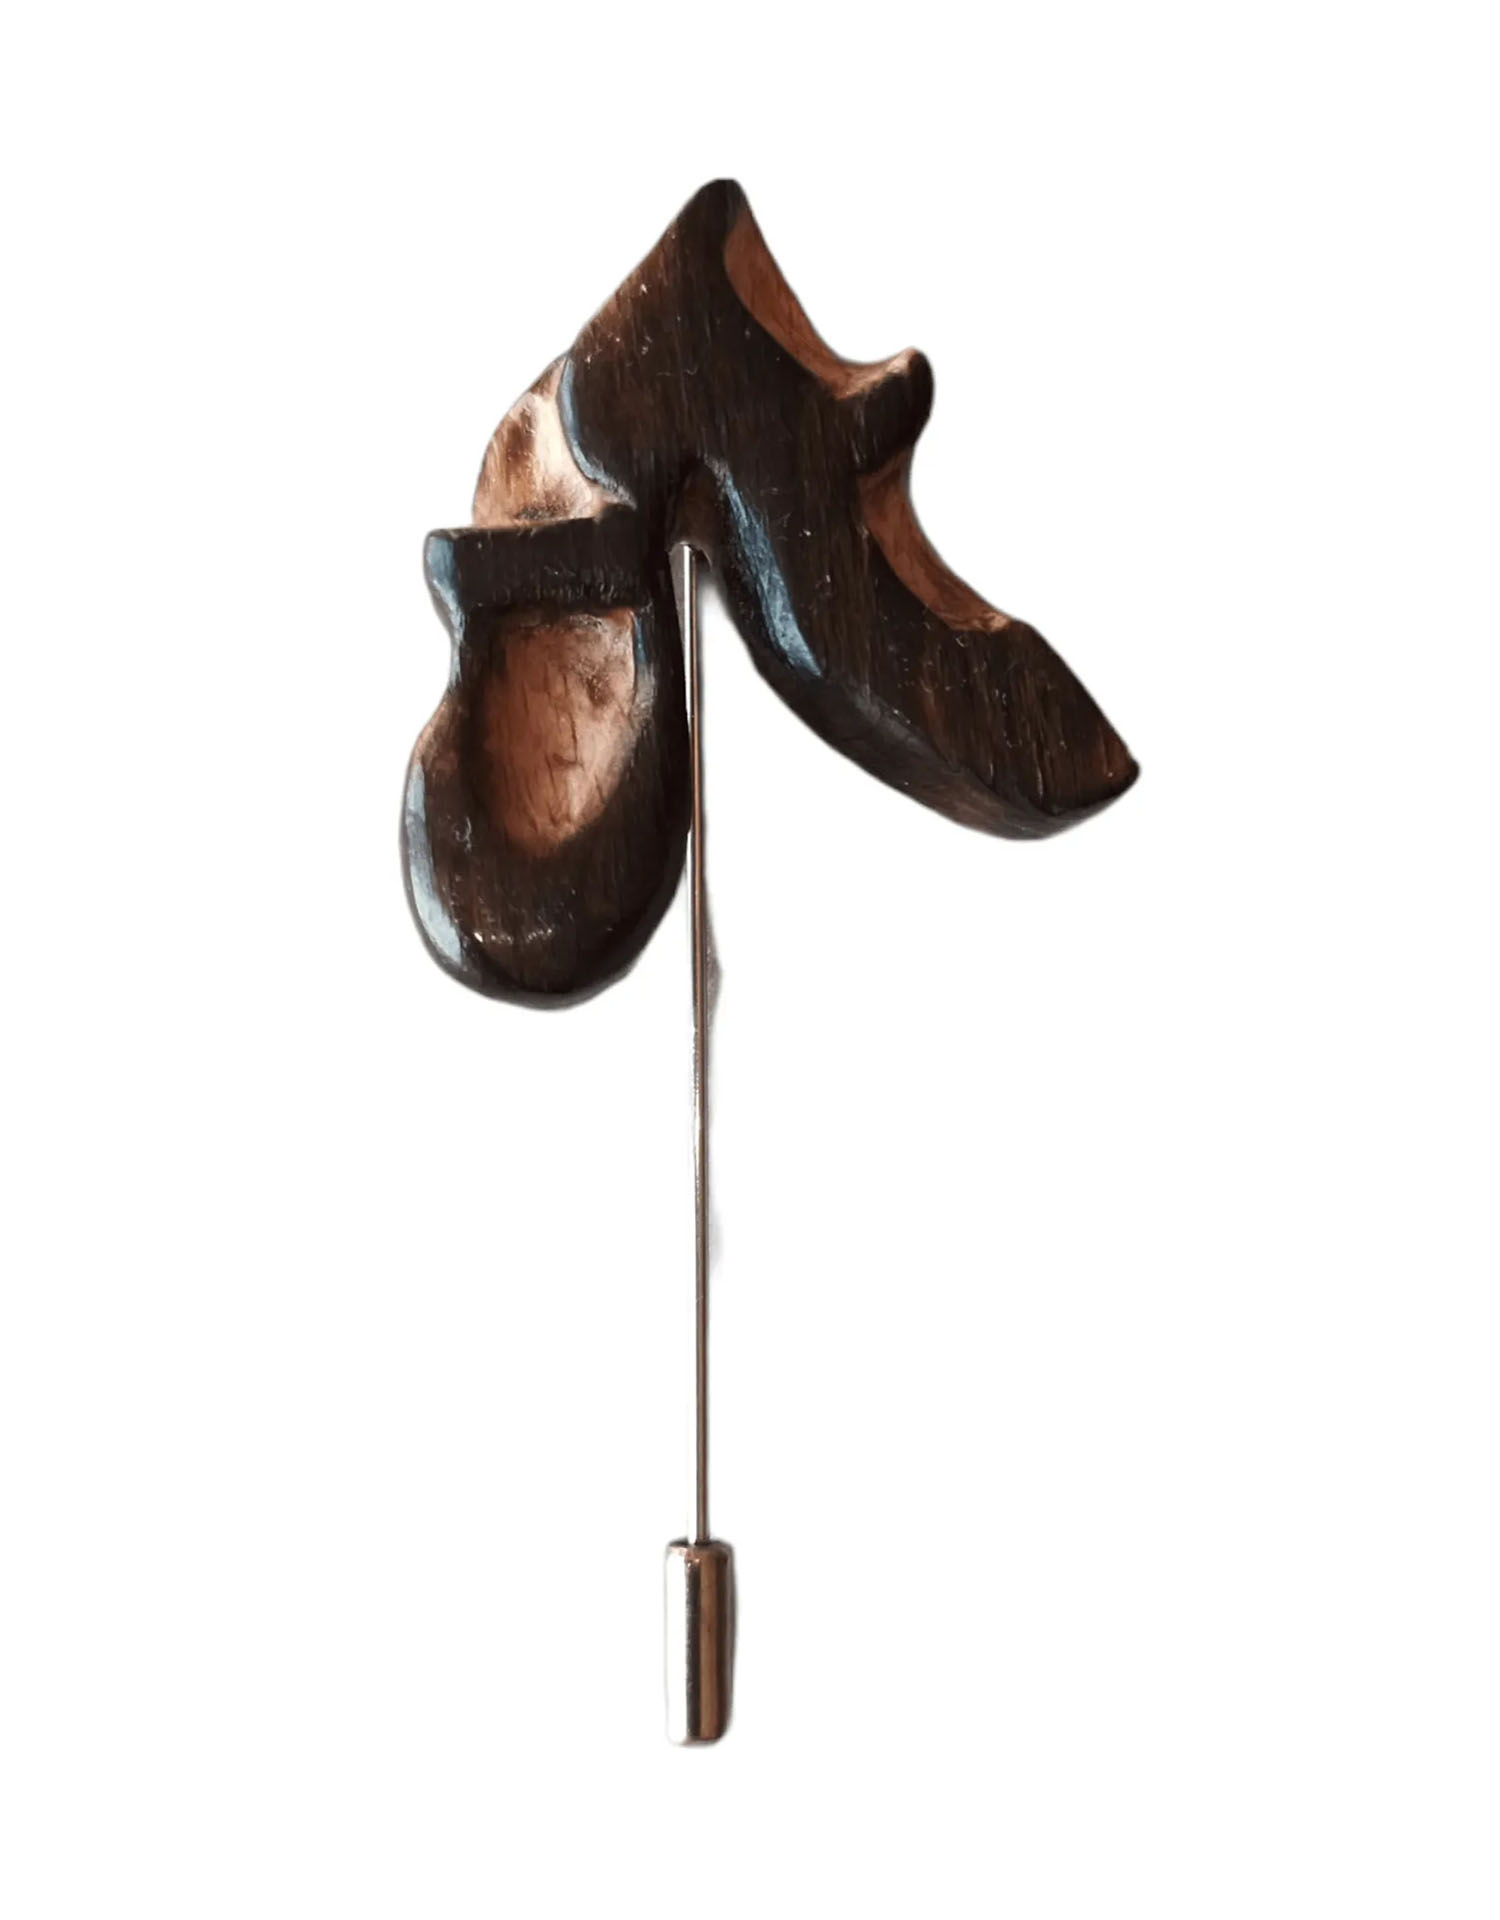 Broche artesano de madera en forma de zapatos